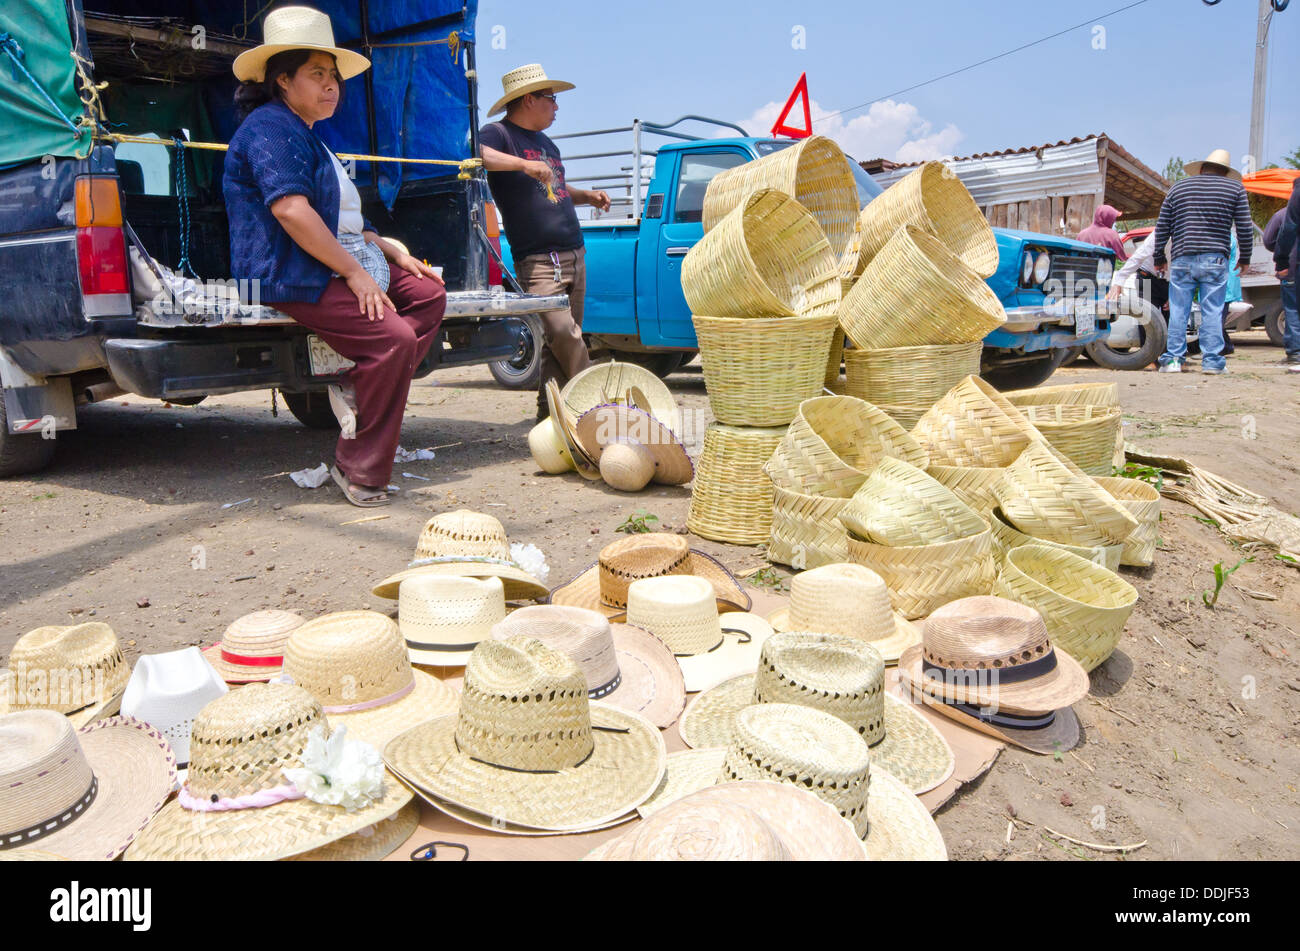 Frau verkaufen große Menge Körbe und Hüte (Sombreros) von der Rückseite eines LKW am Markttag in Mexiko Stockfoto